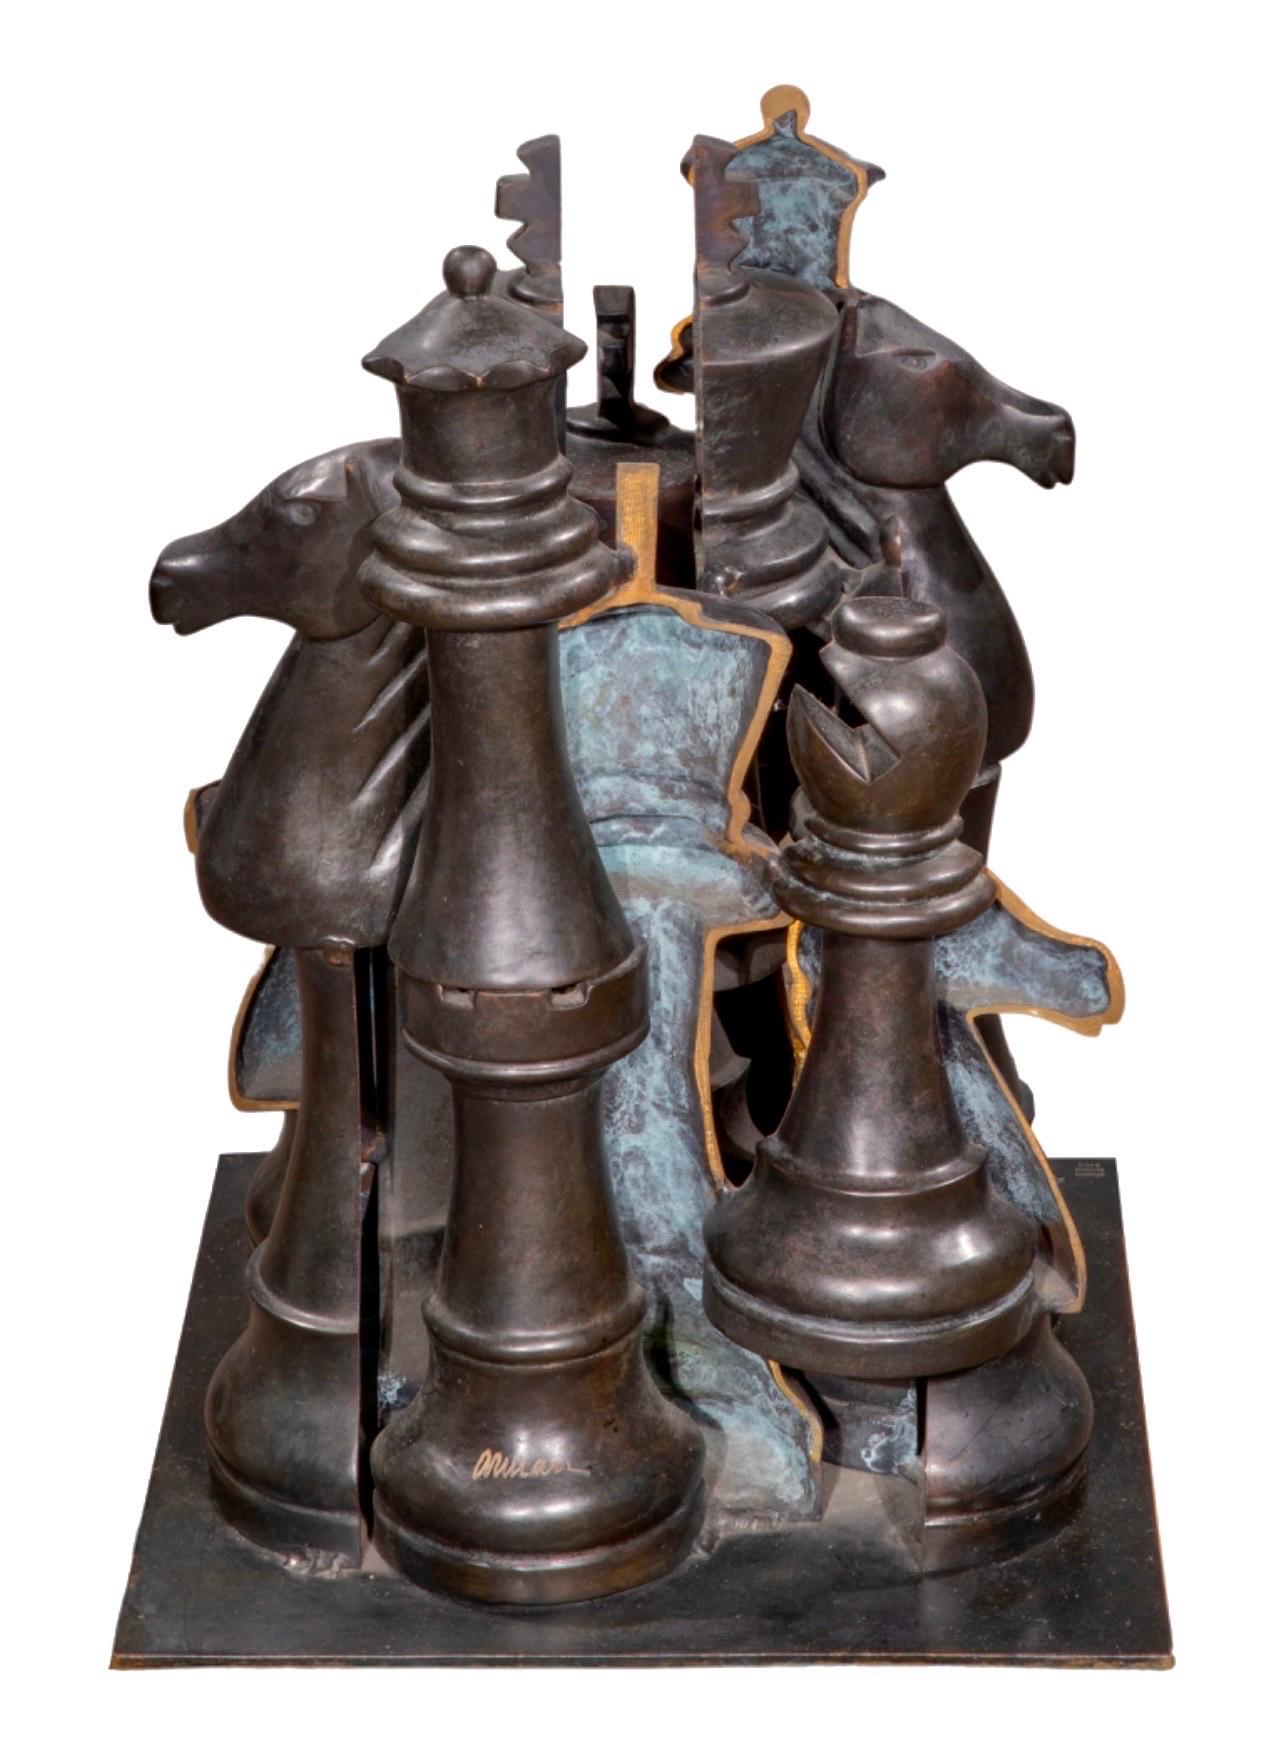 Arman, französischer Amerikaner (1928-2005)
Gambit  (Schachfiguren)
Bronzeguss-Skulptur mit Patina
Eingeschnittene Signatur am unteren Rand, 48/70 mit 
eingeprägte Gießereimarke "Bronze Romain & Fils".  
Abmessungen: (ungefähr) 17 X 13 X 12